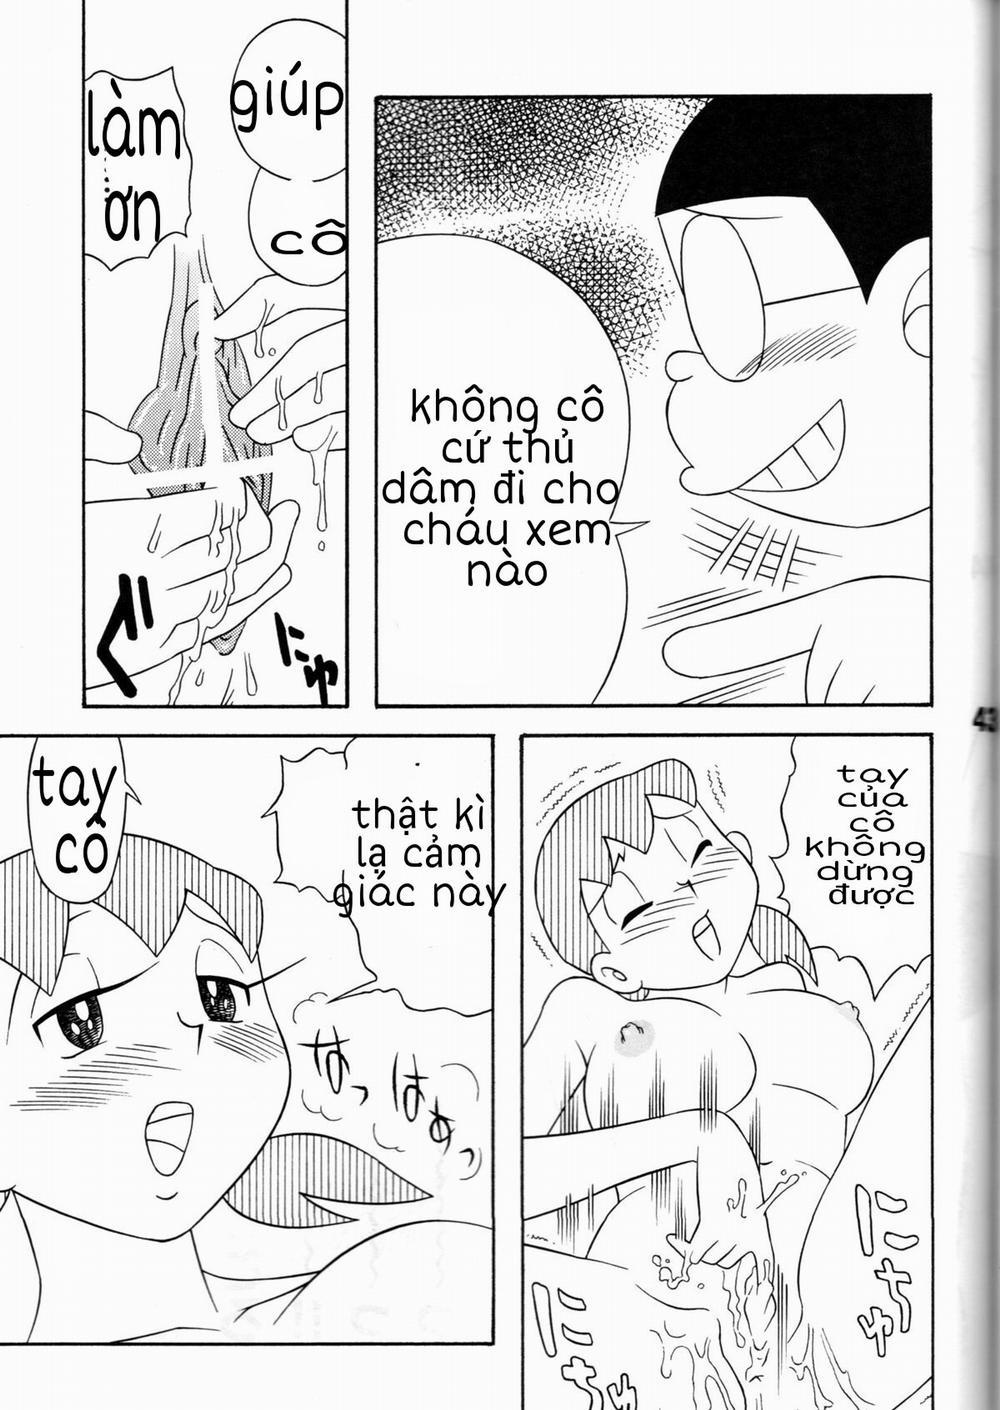 Tuyển Tập Doraemon Doujinshi 18+ Chương 7 Xuka v m g u Trang 35